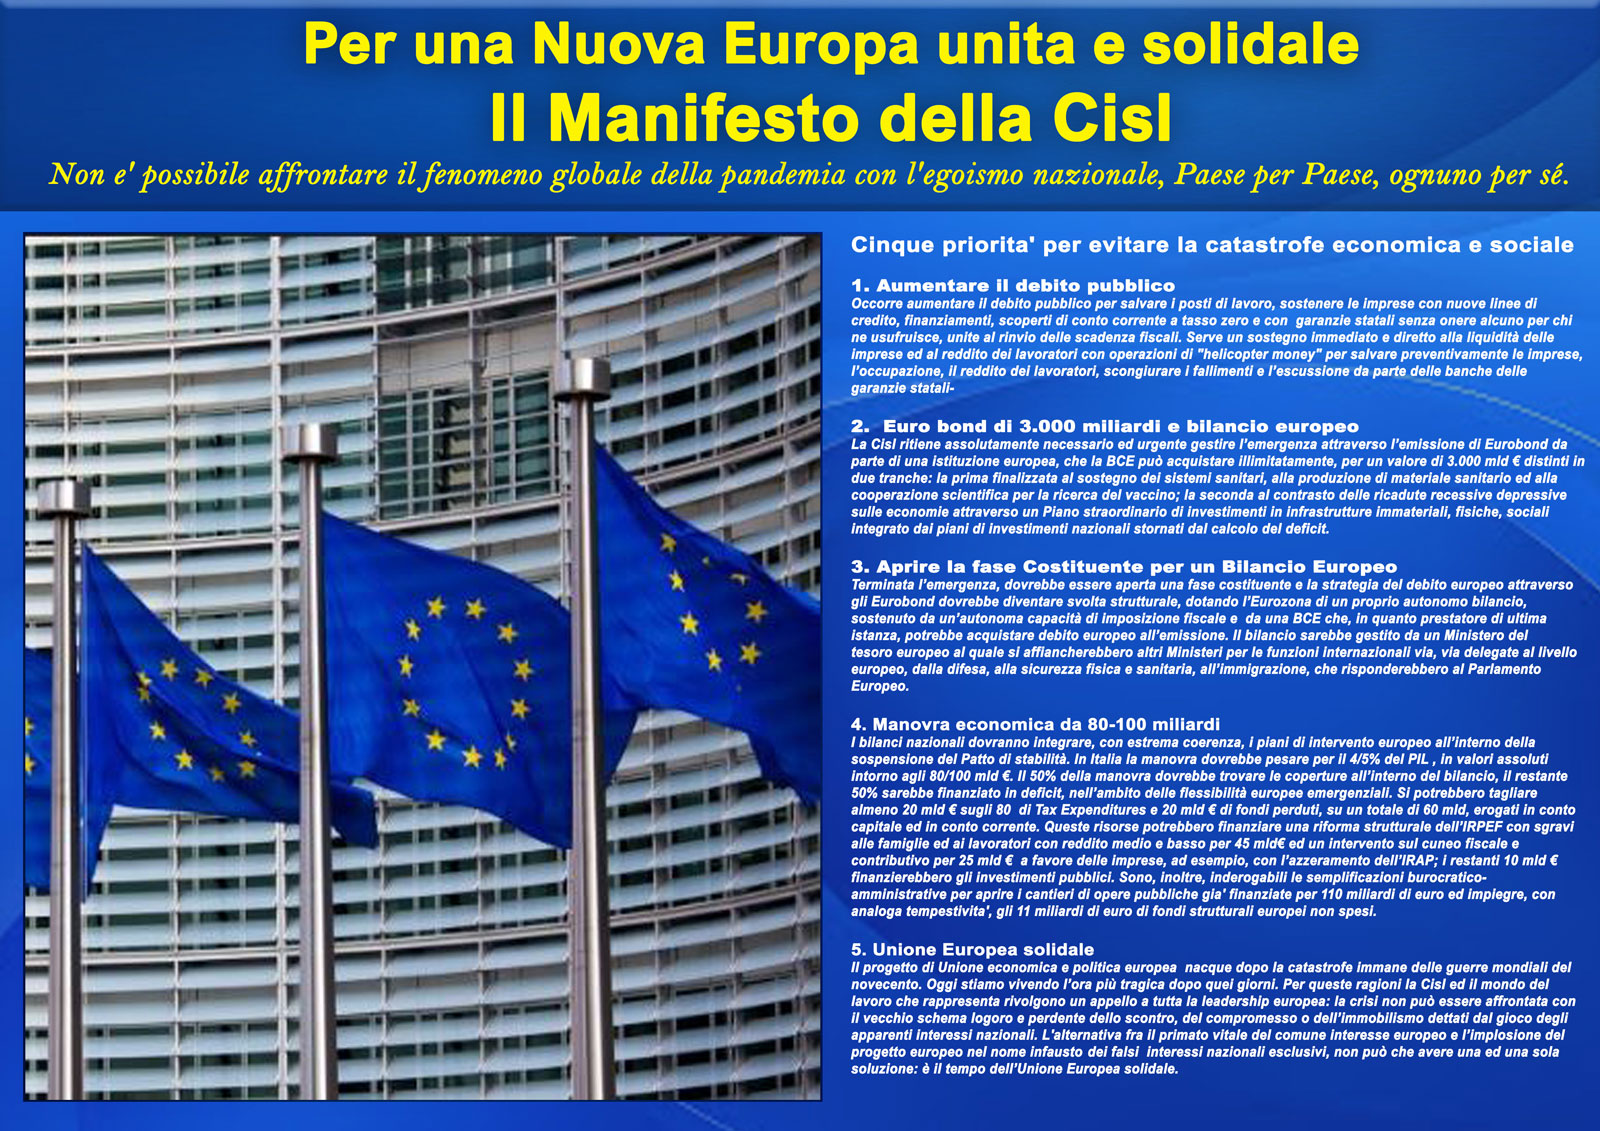 Coronavirus. Il Manifesto della Cisl per la Nuova Europa unita e solidale: 5 punti programmatici per evitare la catastrofe economica e sociale.